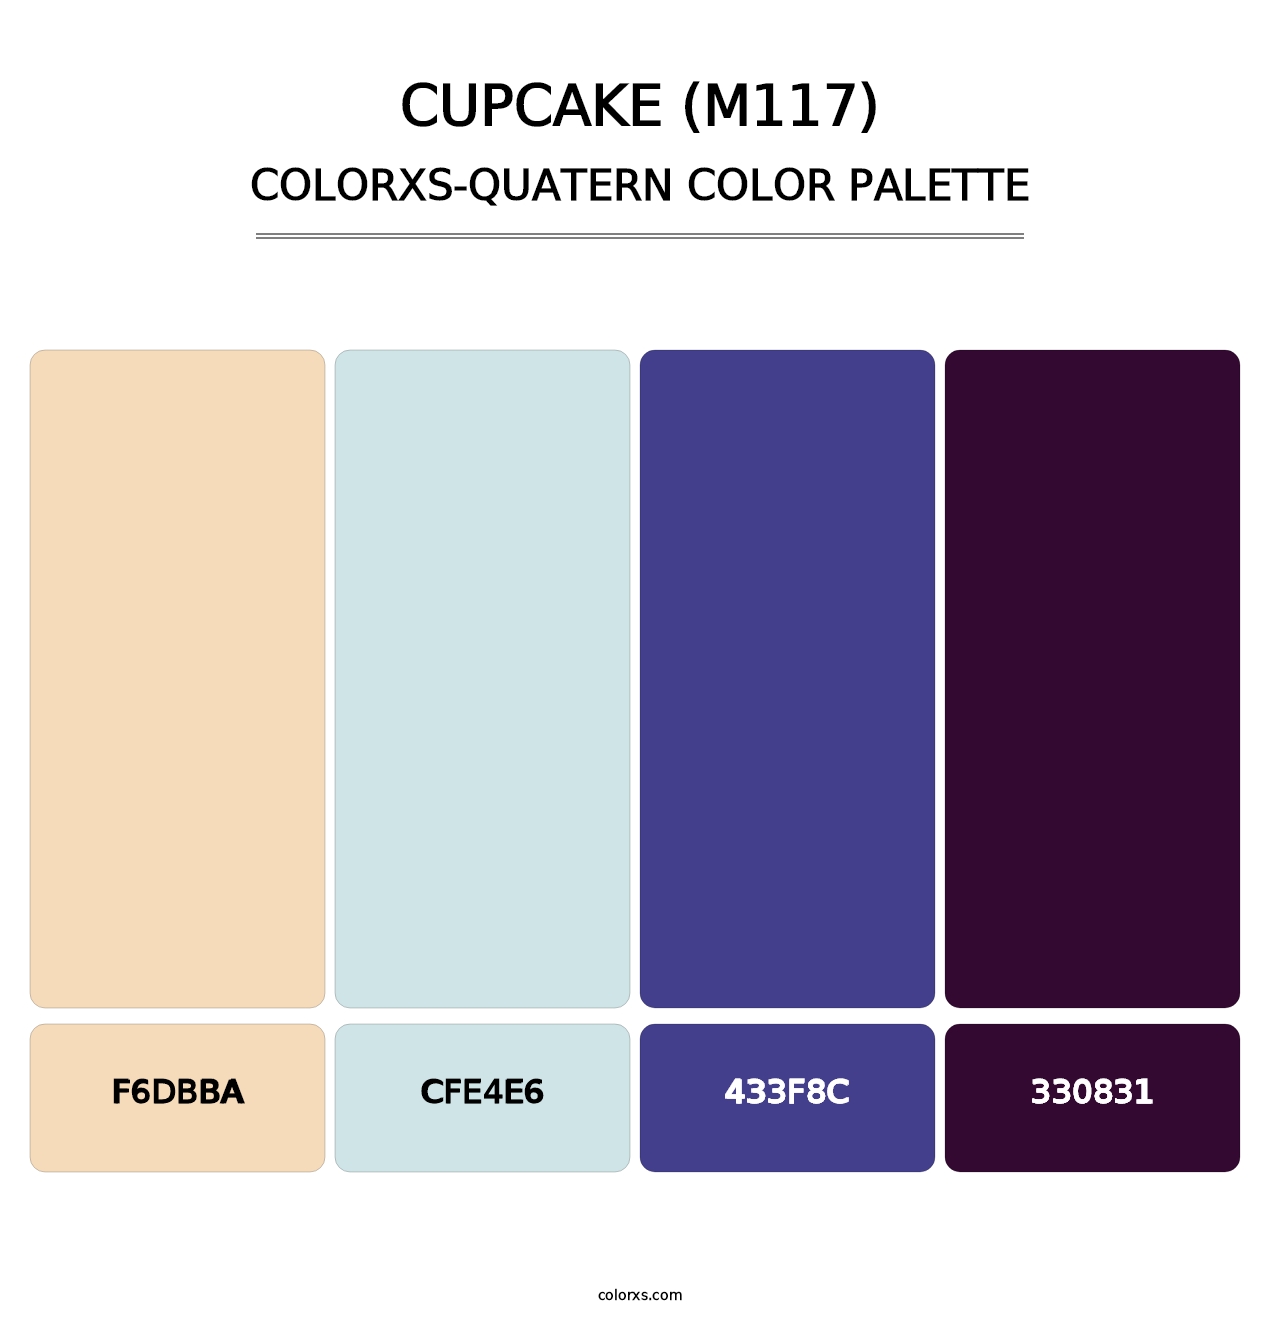 Cupcake (M117) - Colorxs Quatern Palette